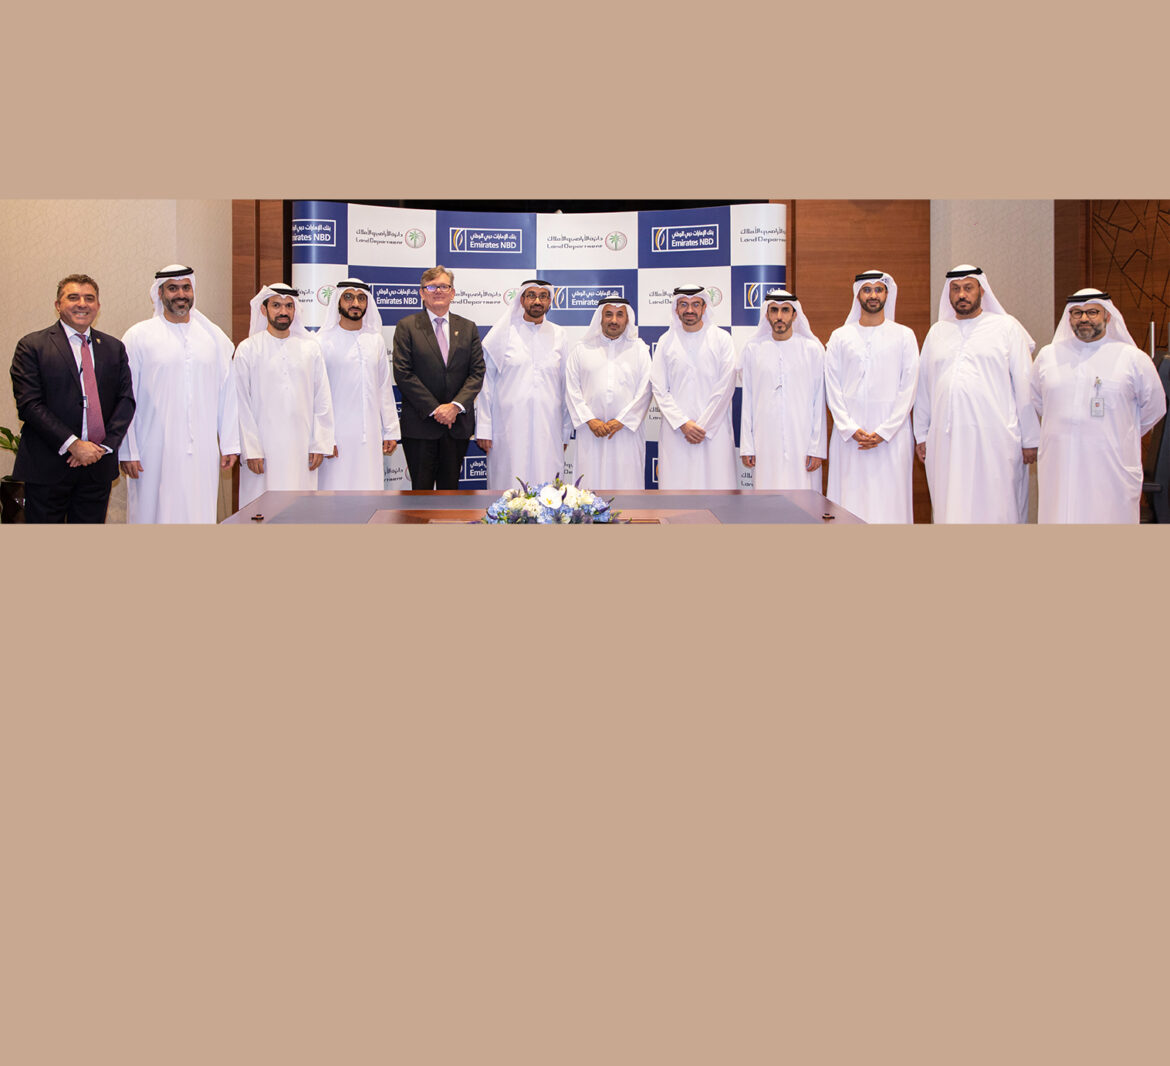 تعاون استراتيجي بين دائرة الأراضي والأملاك في دبي وبنك الإمارات دبي الوطني لتعزيز قطاع العقارات في الدولة